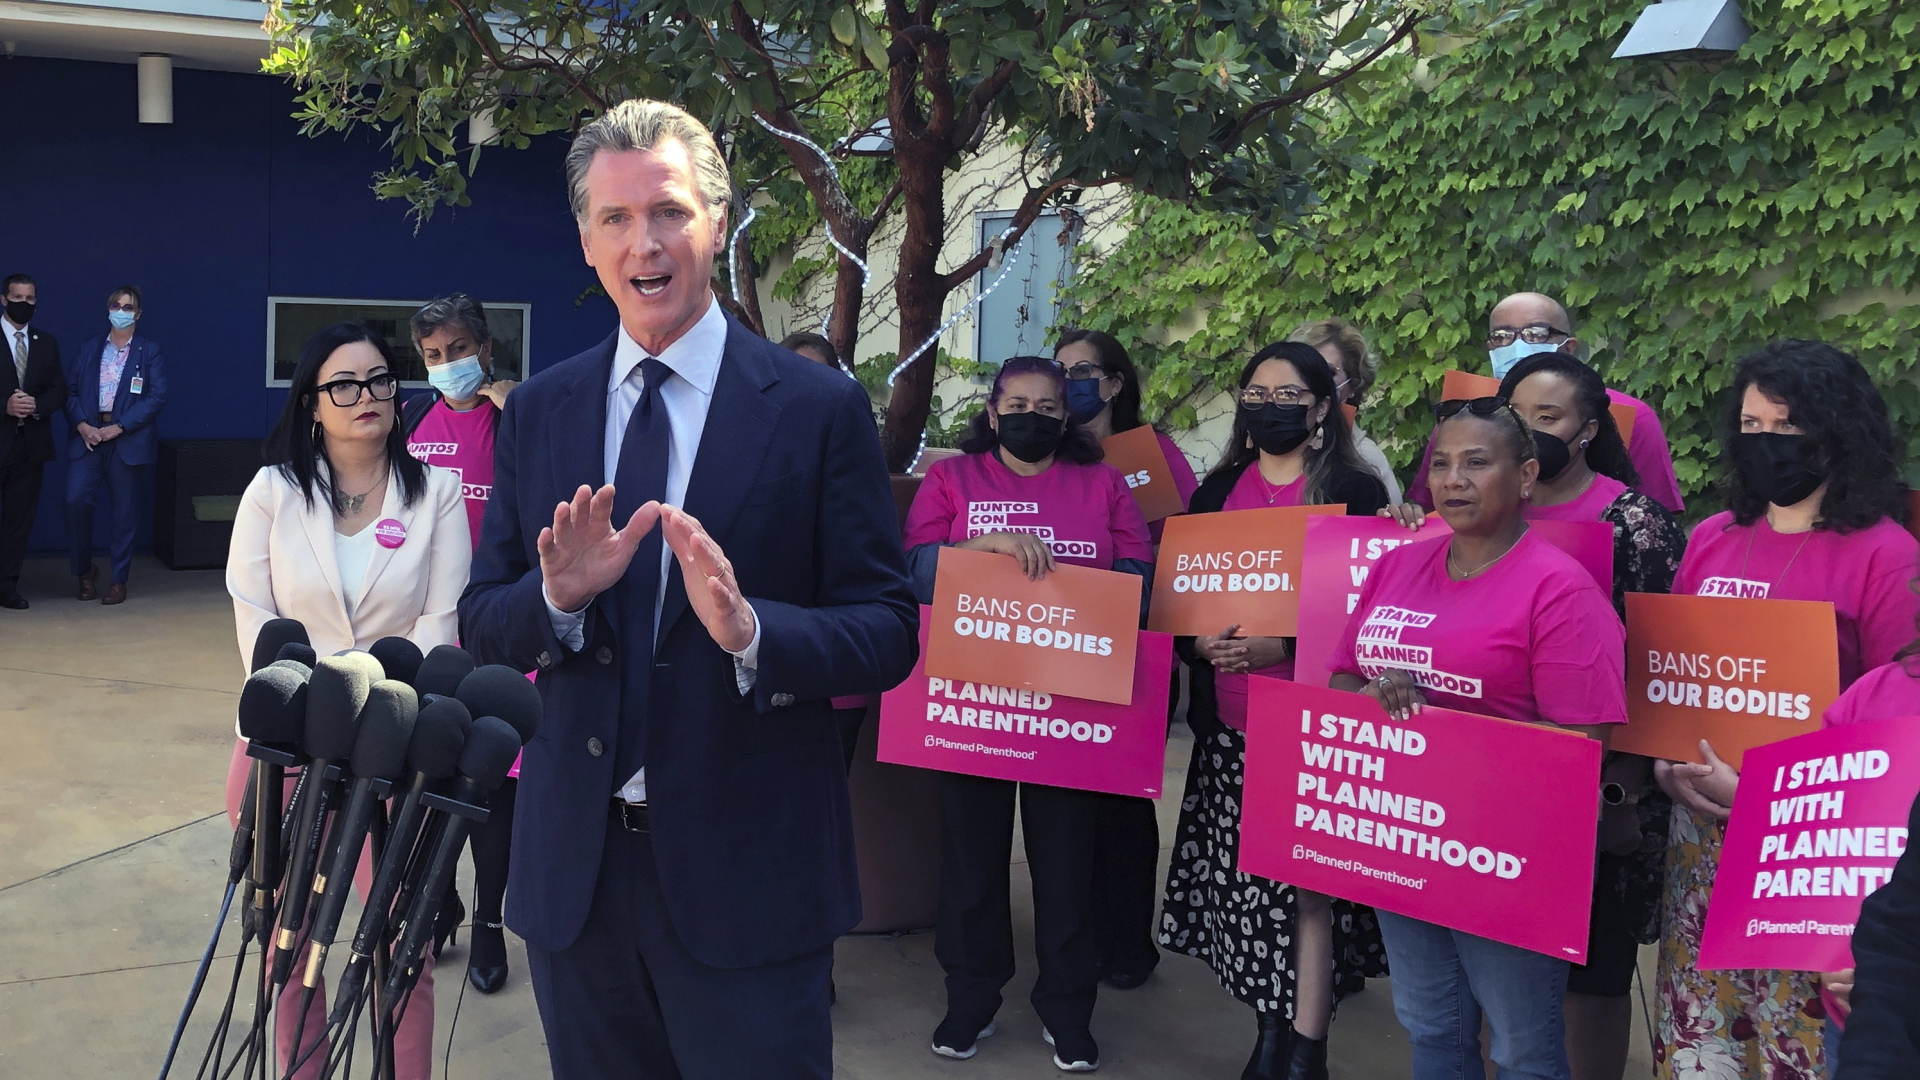 Gavin Newsom hät eine Rede, dahinter stehen mehrere Frauen, sie halten Schilder mit der Aufschrift "I stand with planned parenthood".